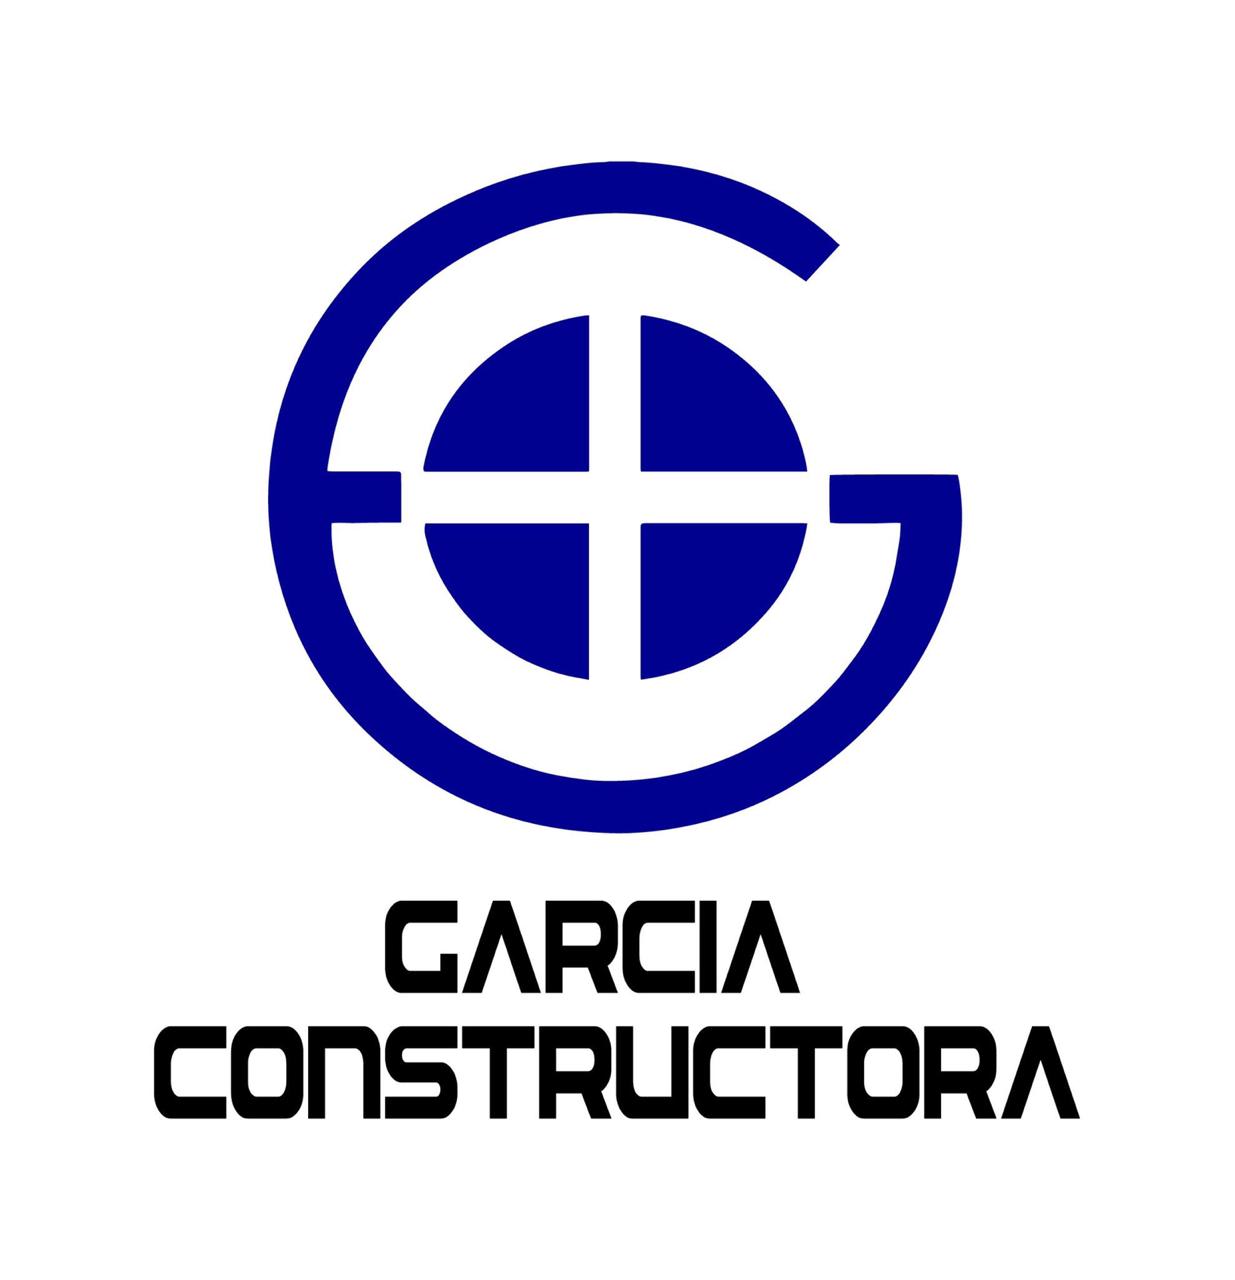 GC Construcciones